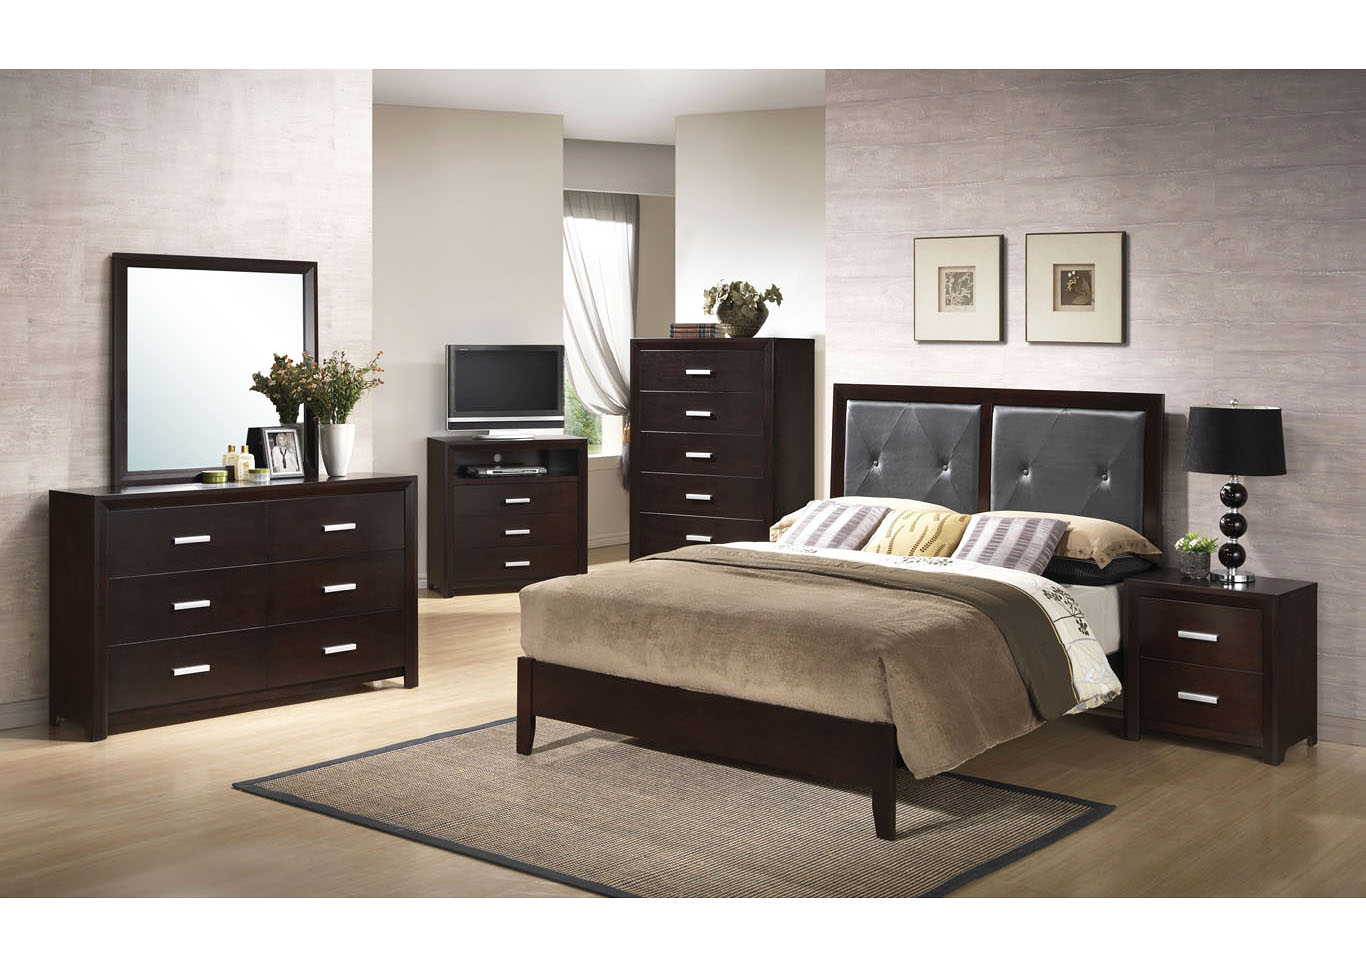 Cappuccino Panel Queen 6 Piece Bedroom Set W/ 2 Nightstand, Chest, Dresser & Mirror,Global Trading